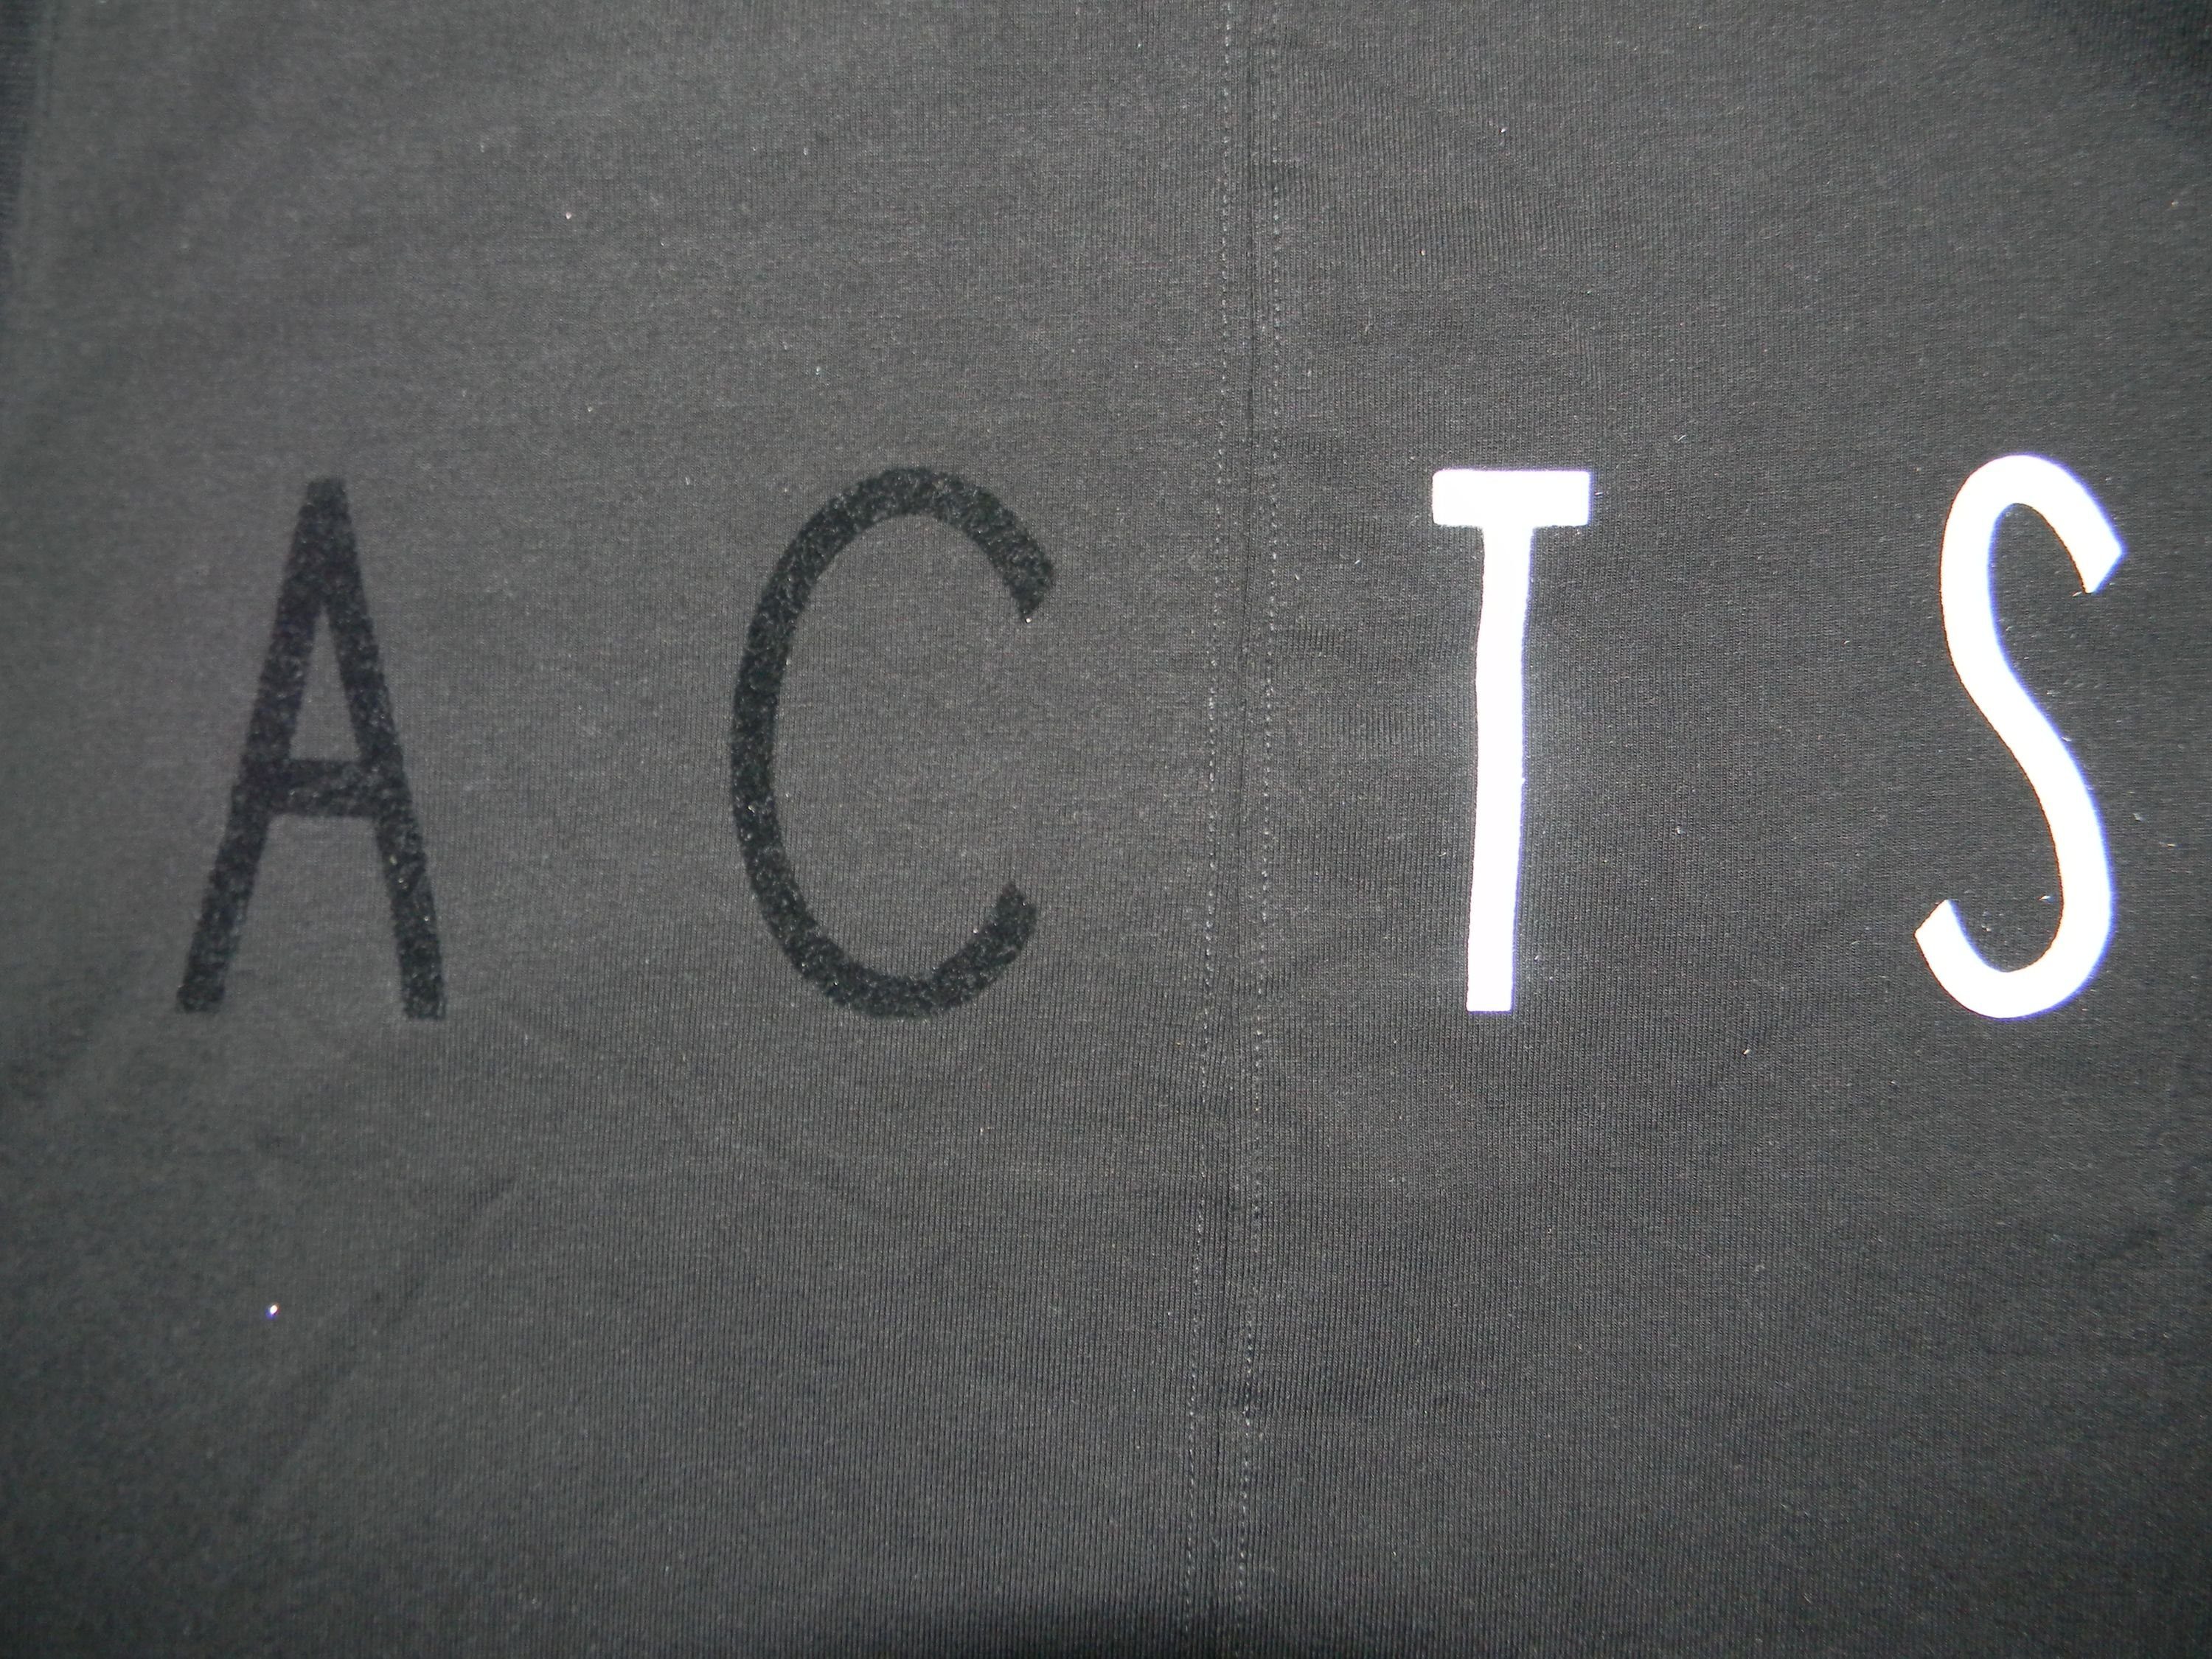 1-tlg., T-Shirt Stück) (Stück, mit Frontprint ACTS